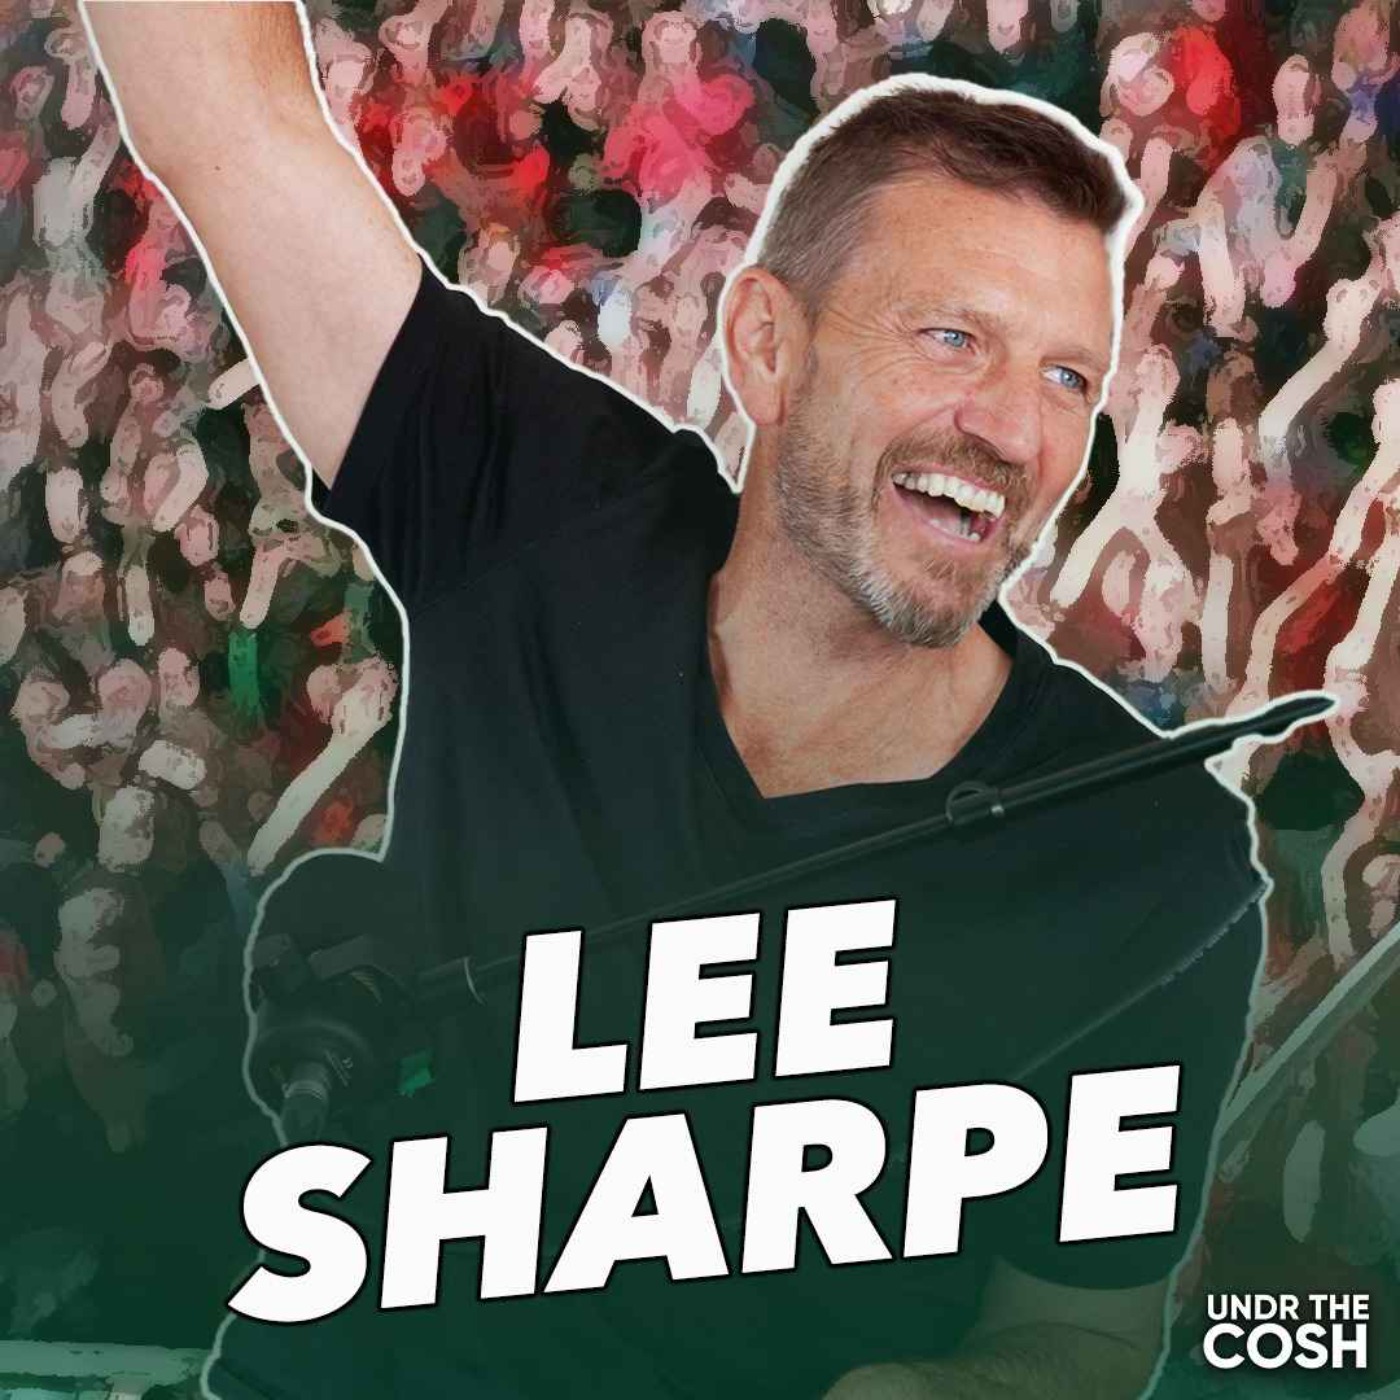 Lee Sharpe | Fergie's Home Invasion